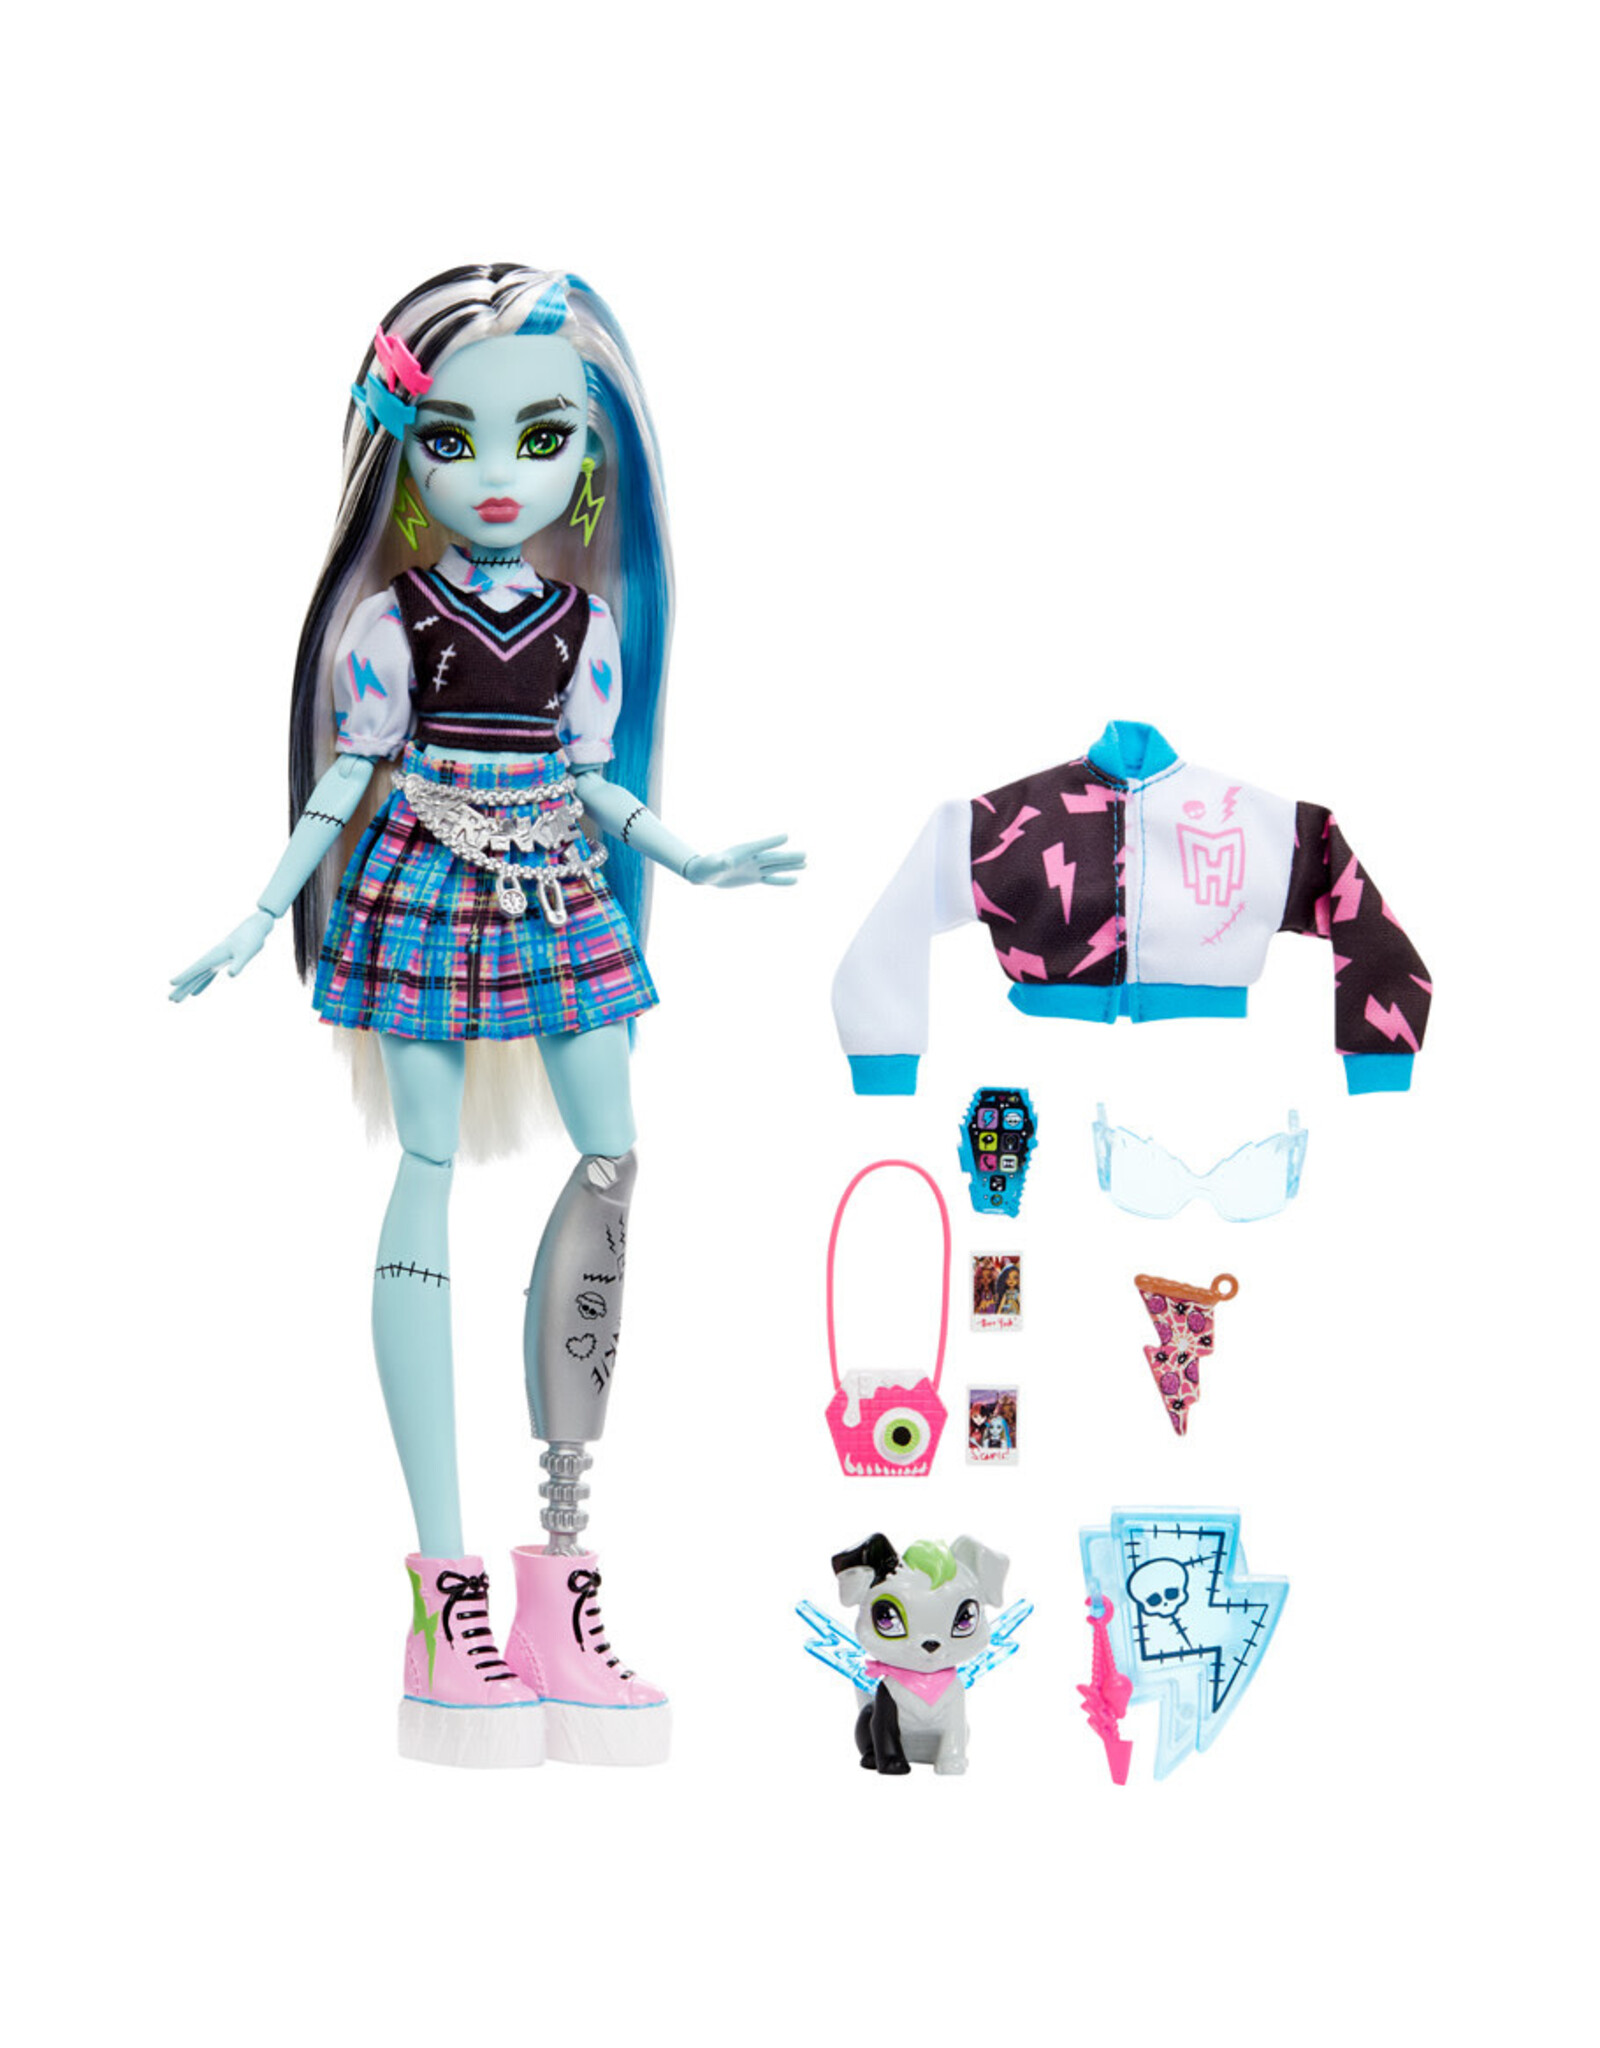 Mattel Inc. Monster High: Frankie Doll